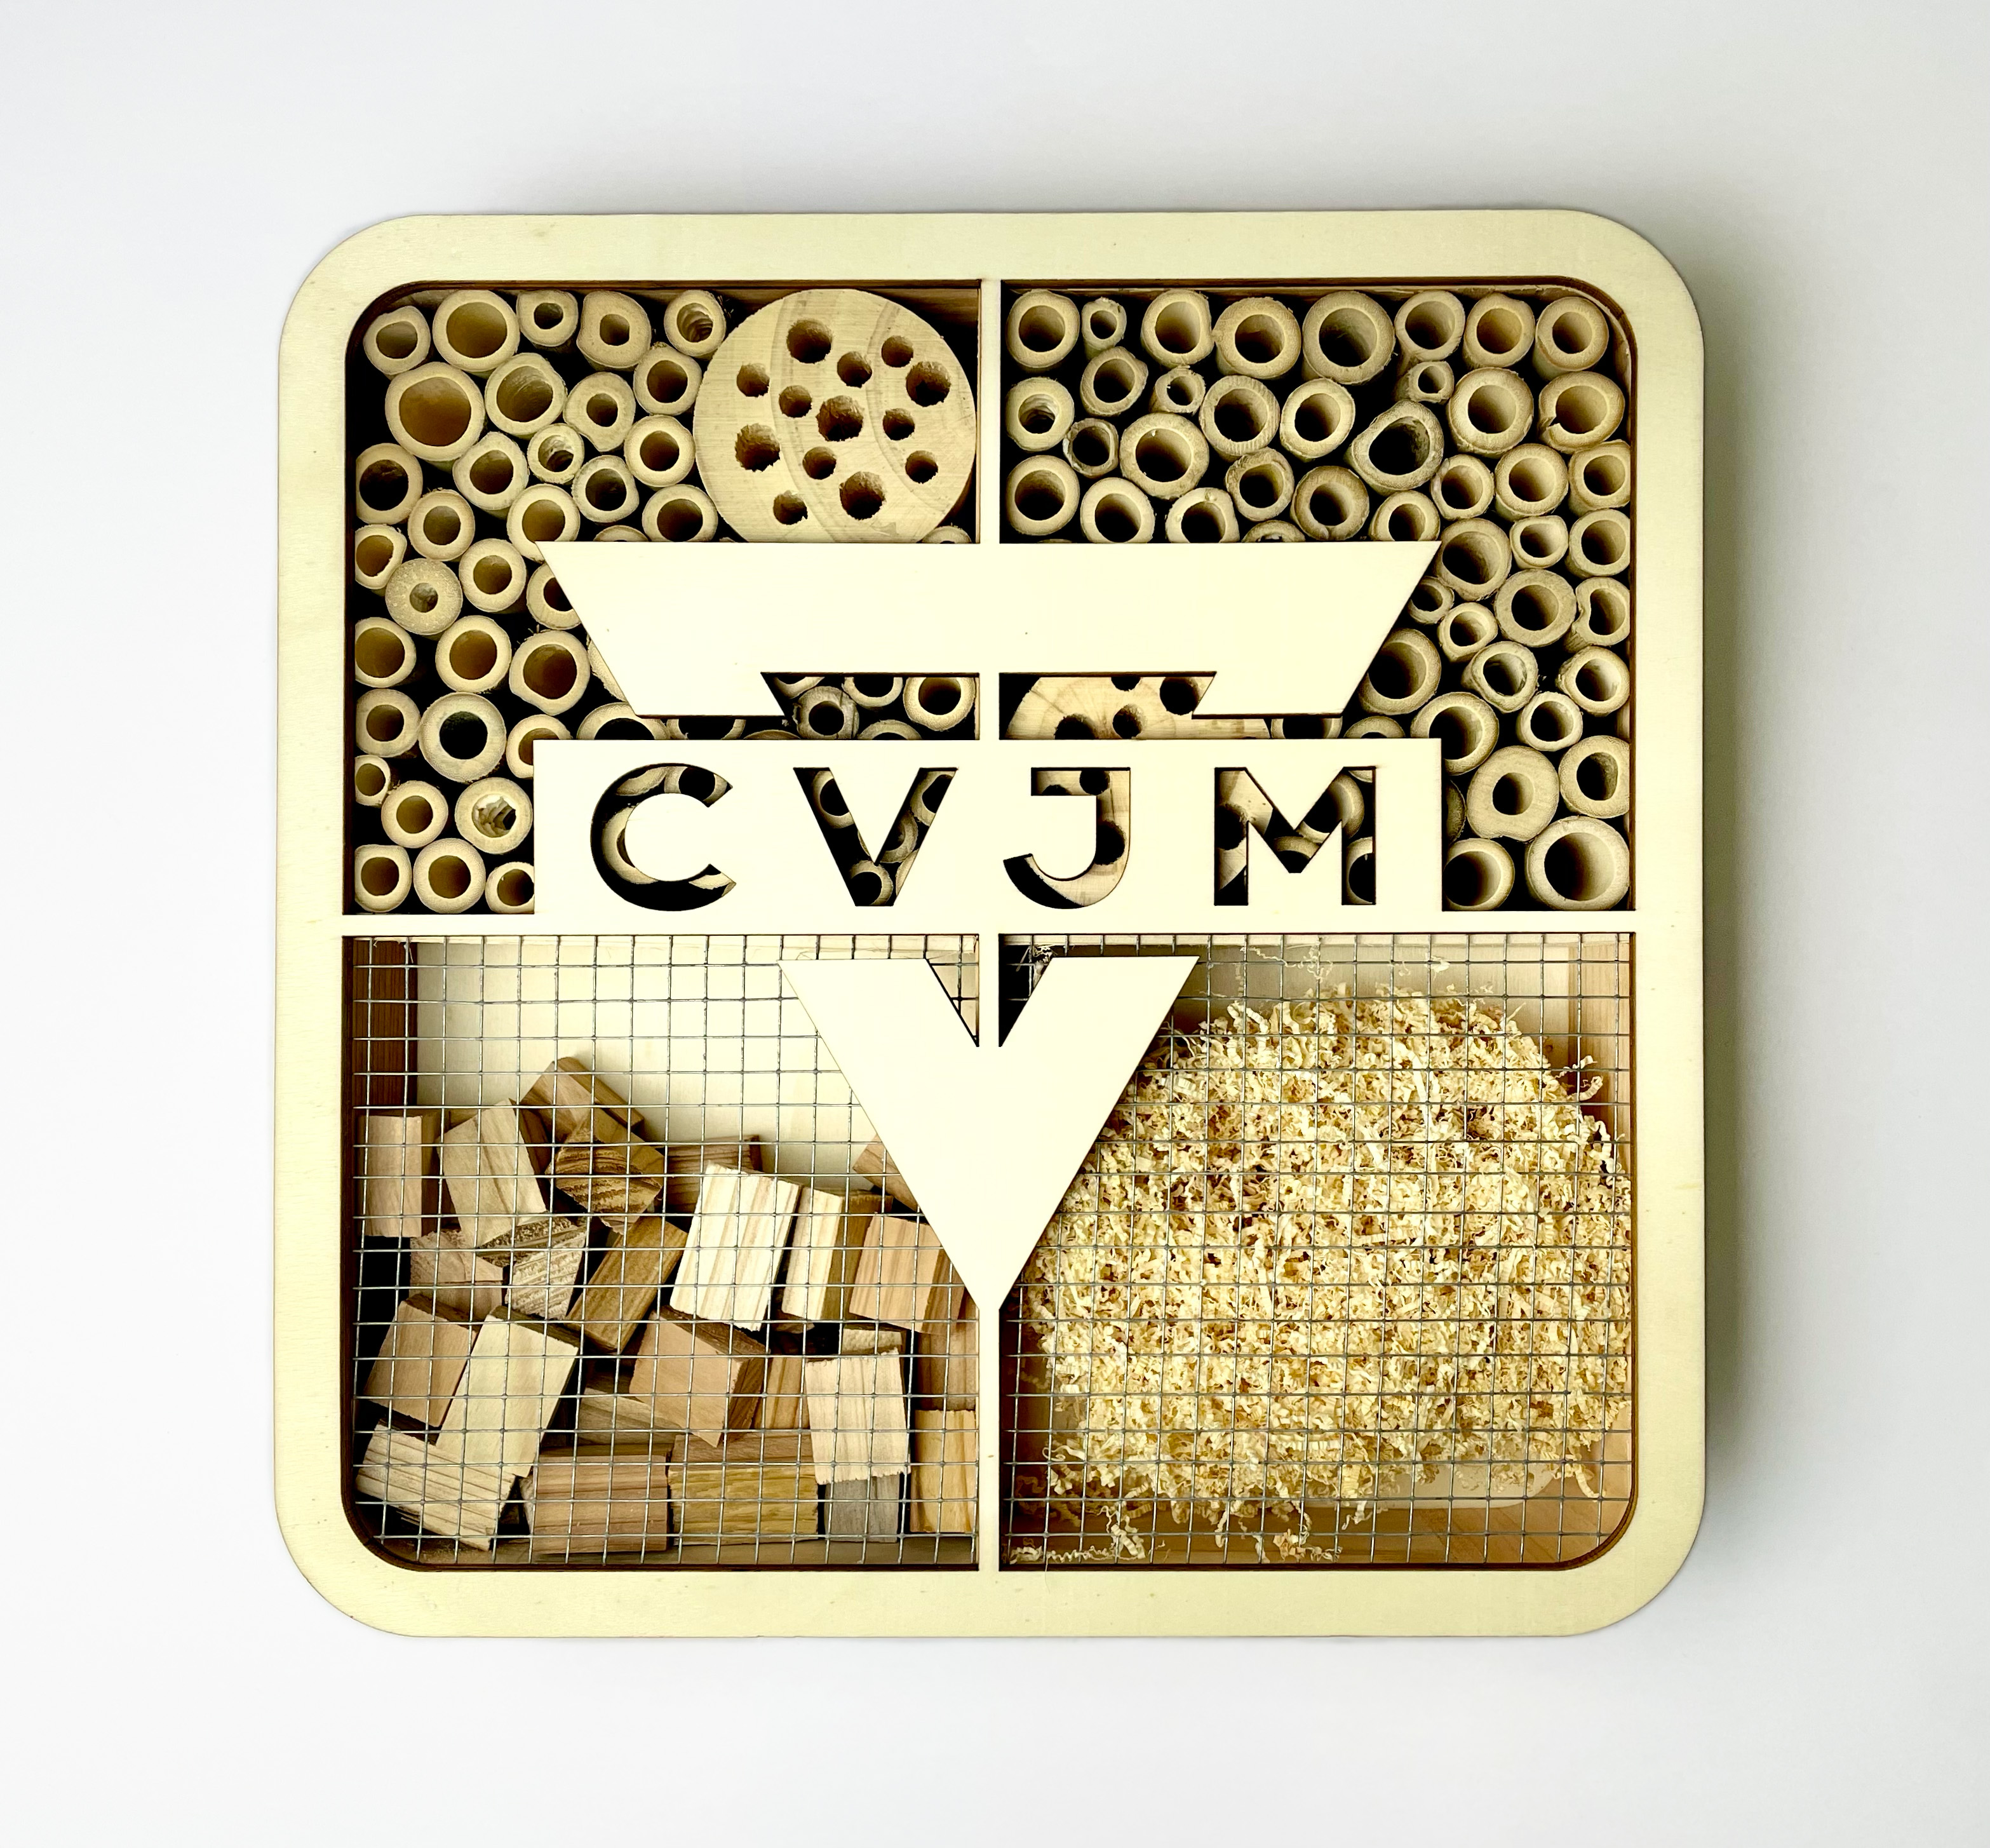 CVJM-Insektenhotel